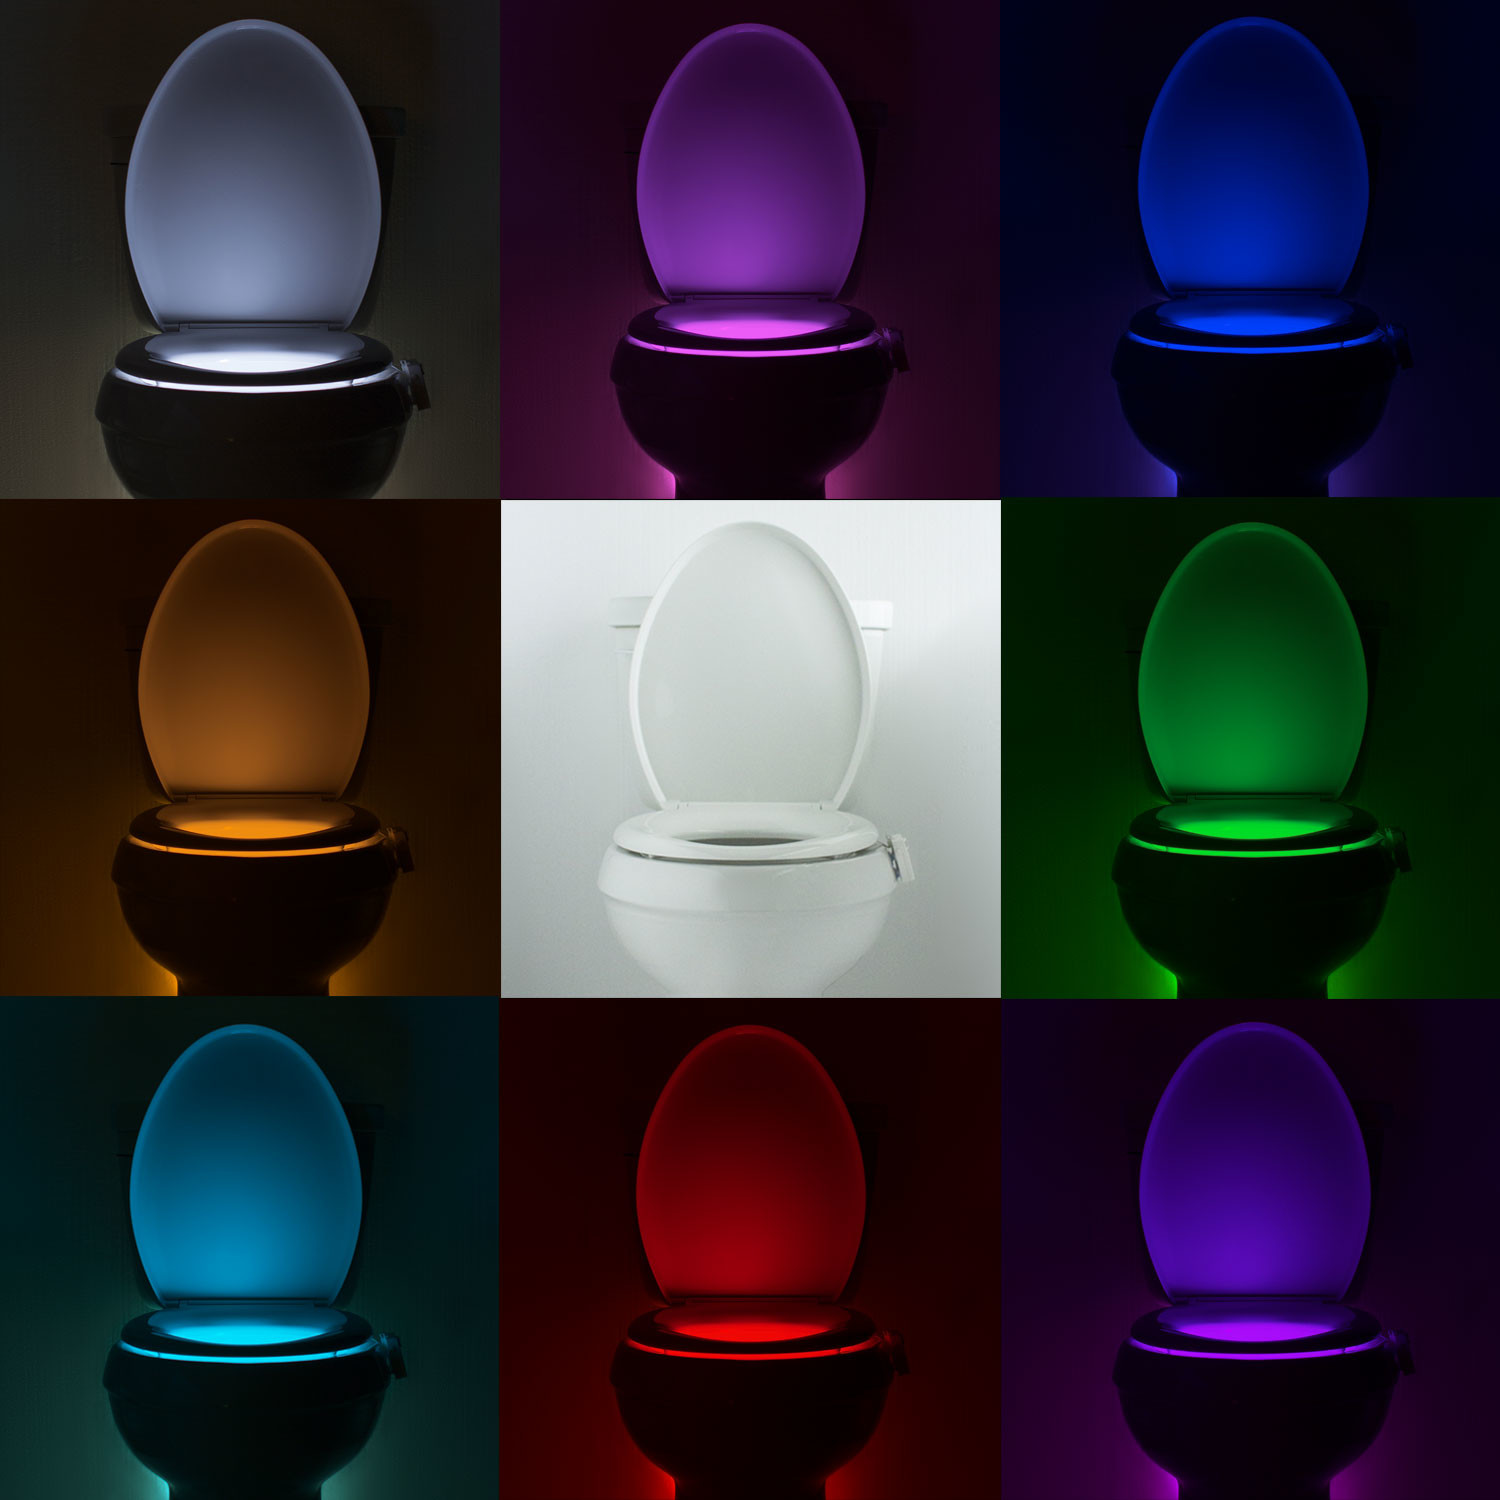 IllumiBowl Motion-Activated Bathroom Toilet Night Light